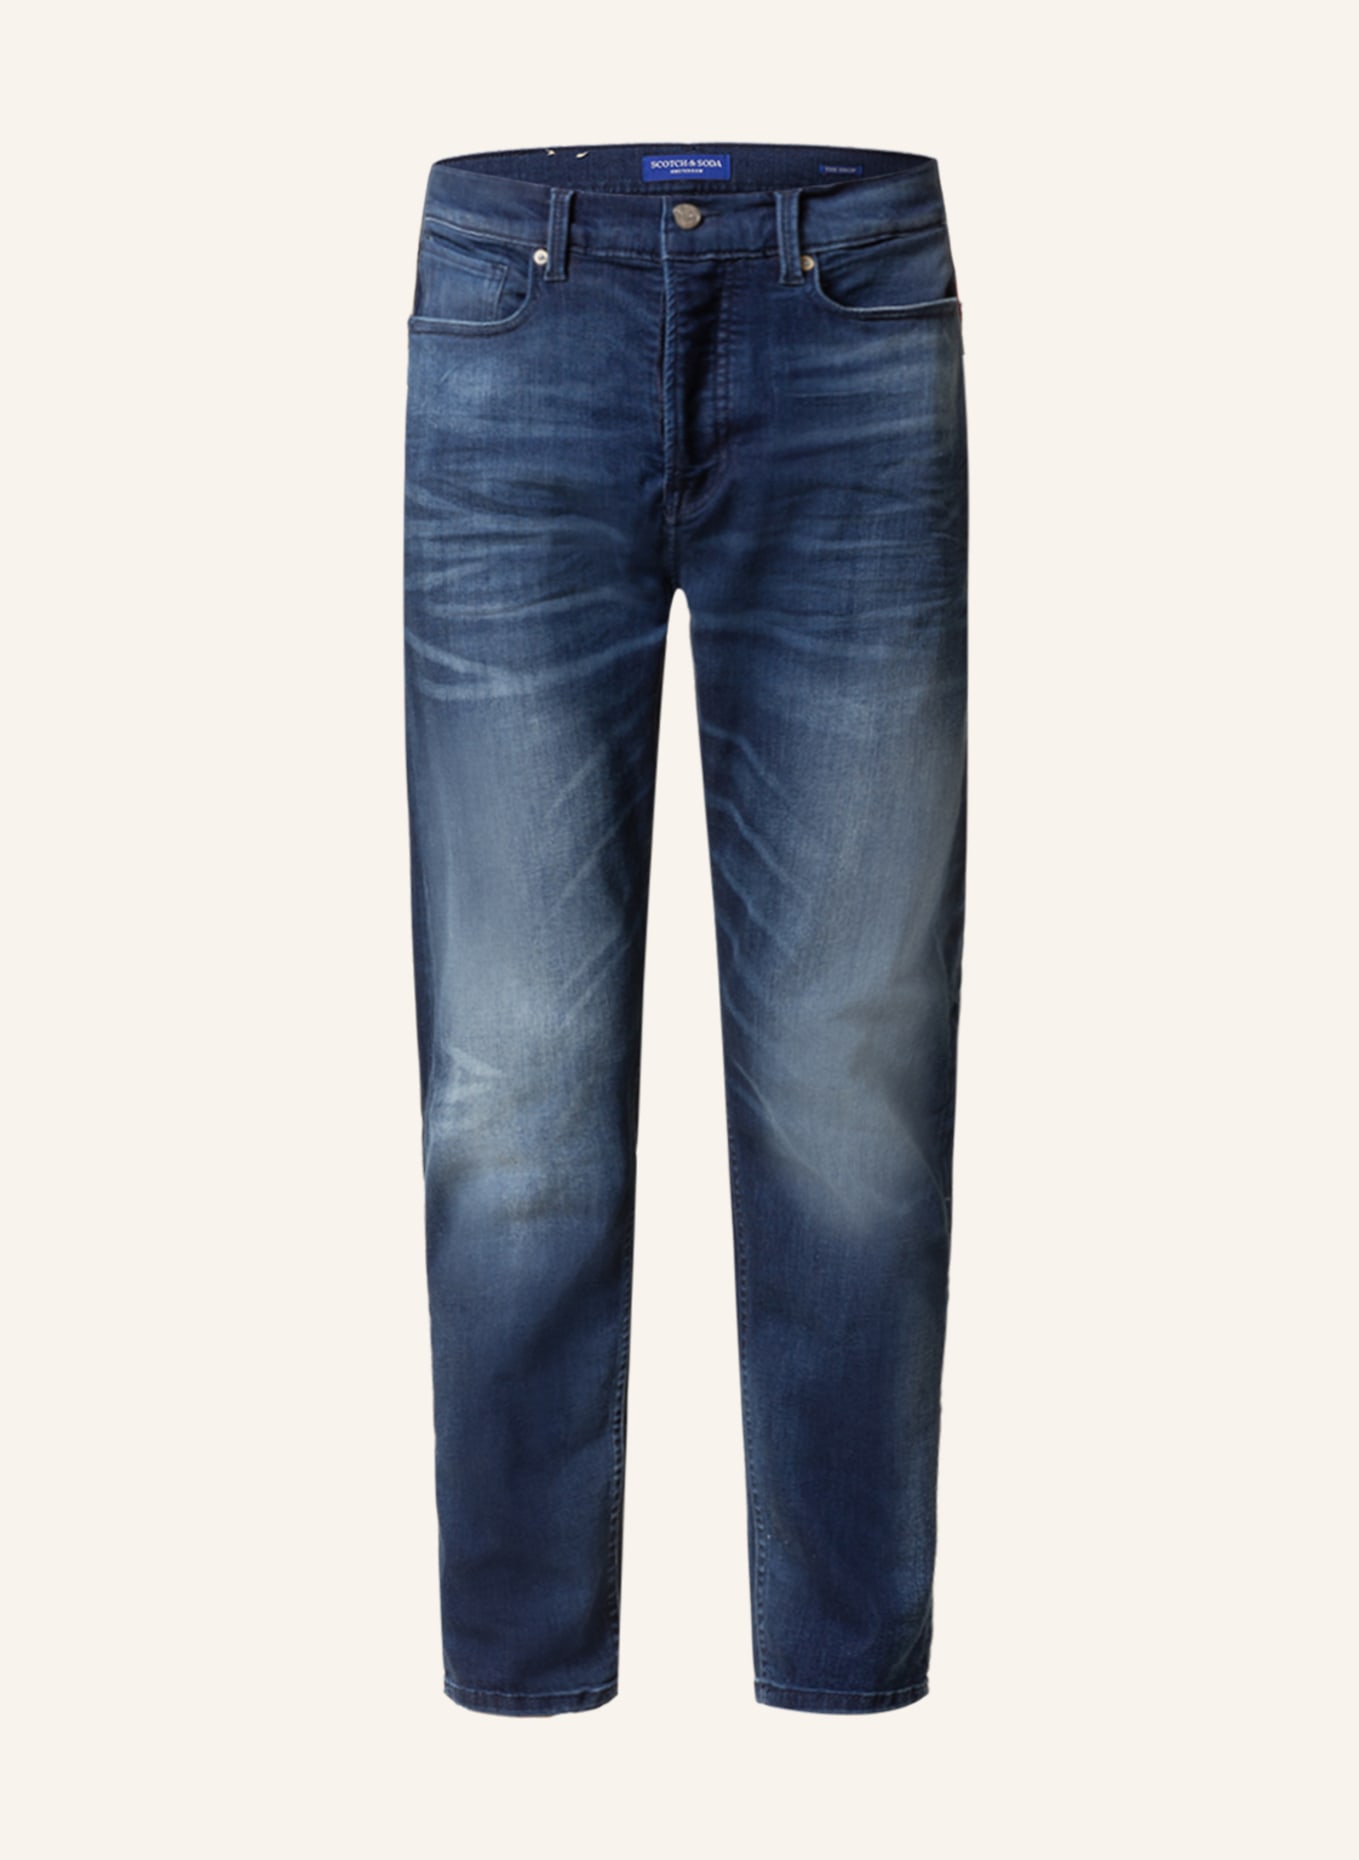 SCOTCH & SODA Jeans THE DROP Regular Tapered Fit, Farbe: 5624 Secret Blauw (Bild 1)